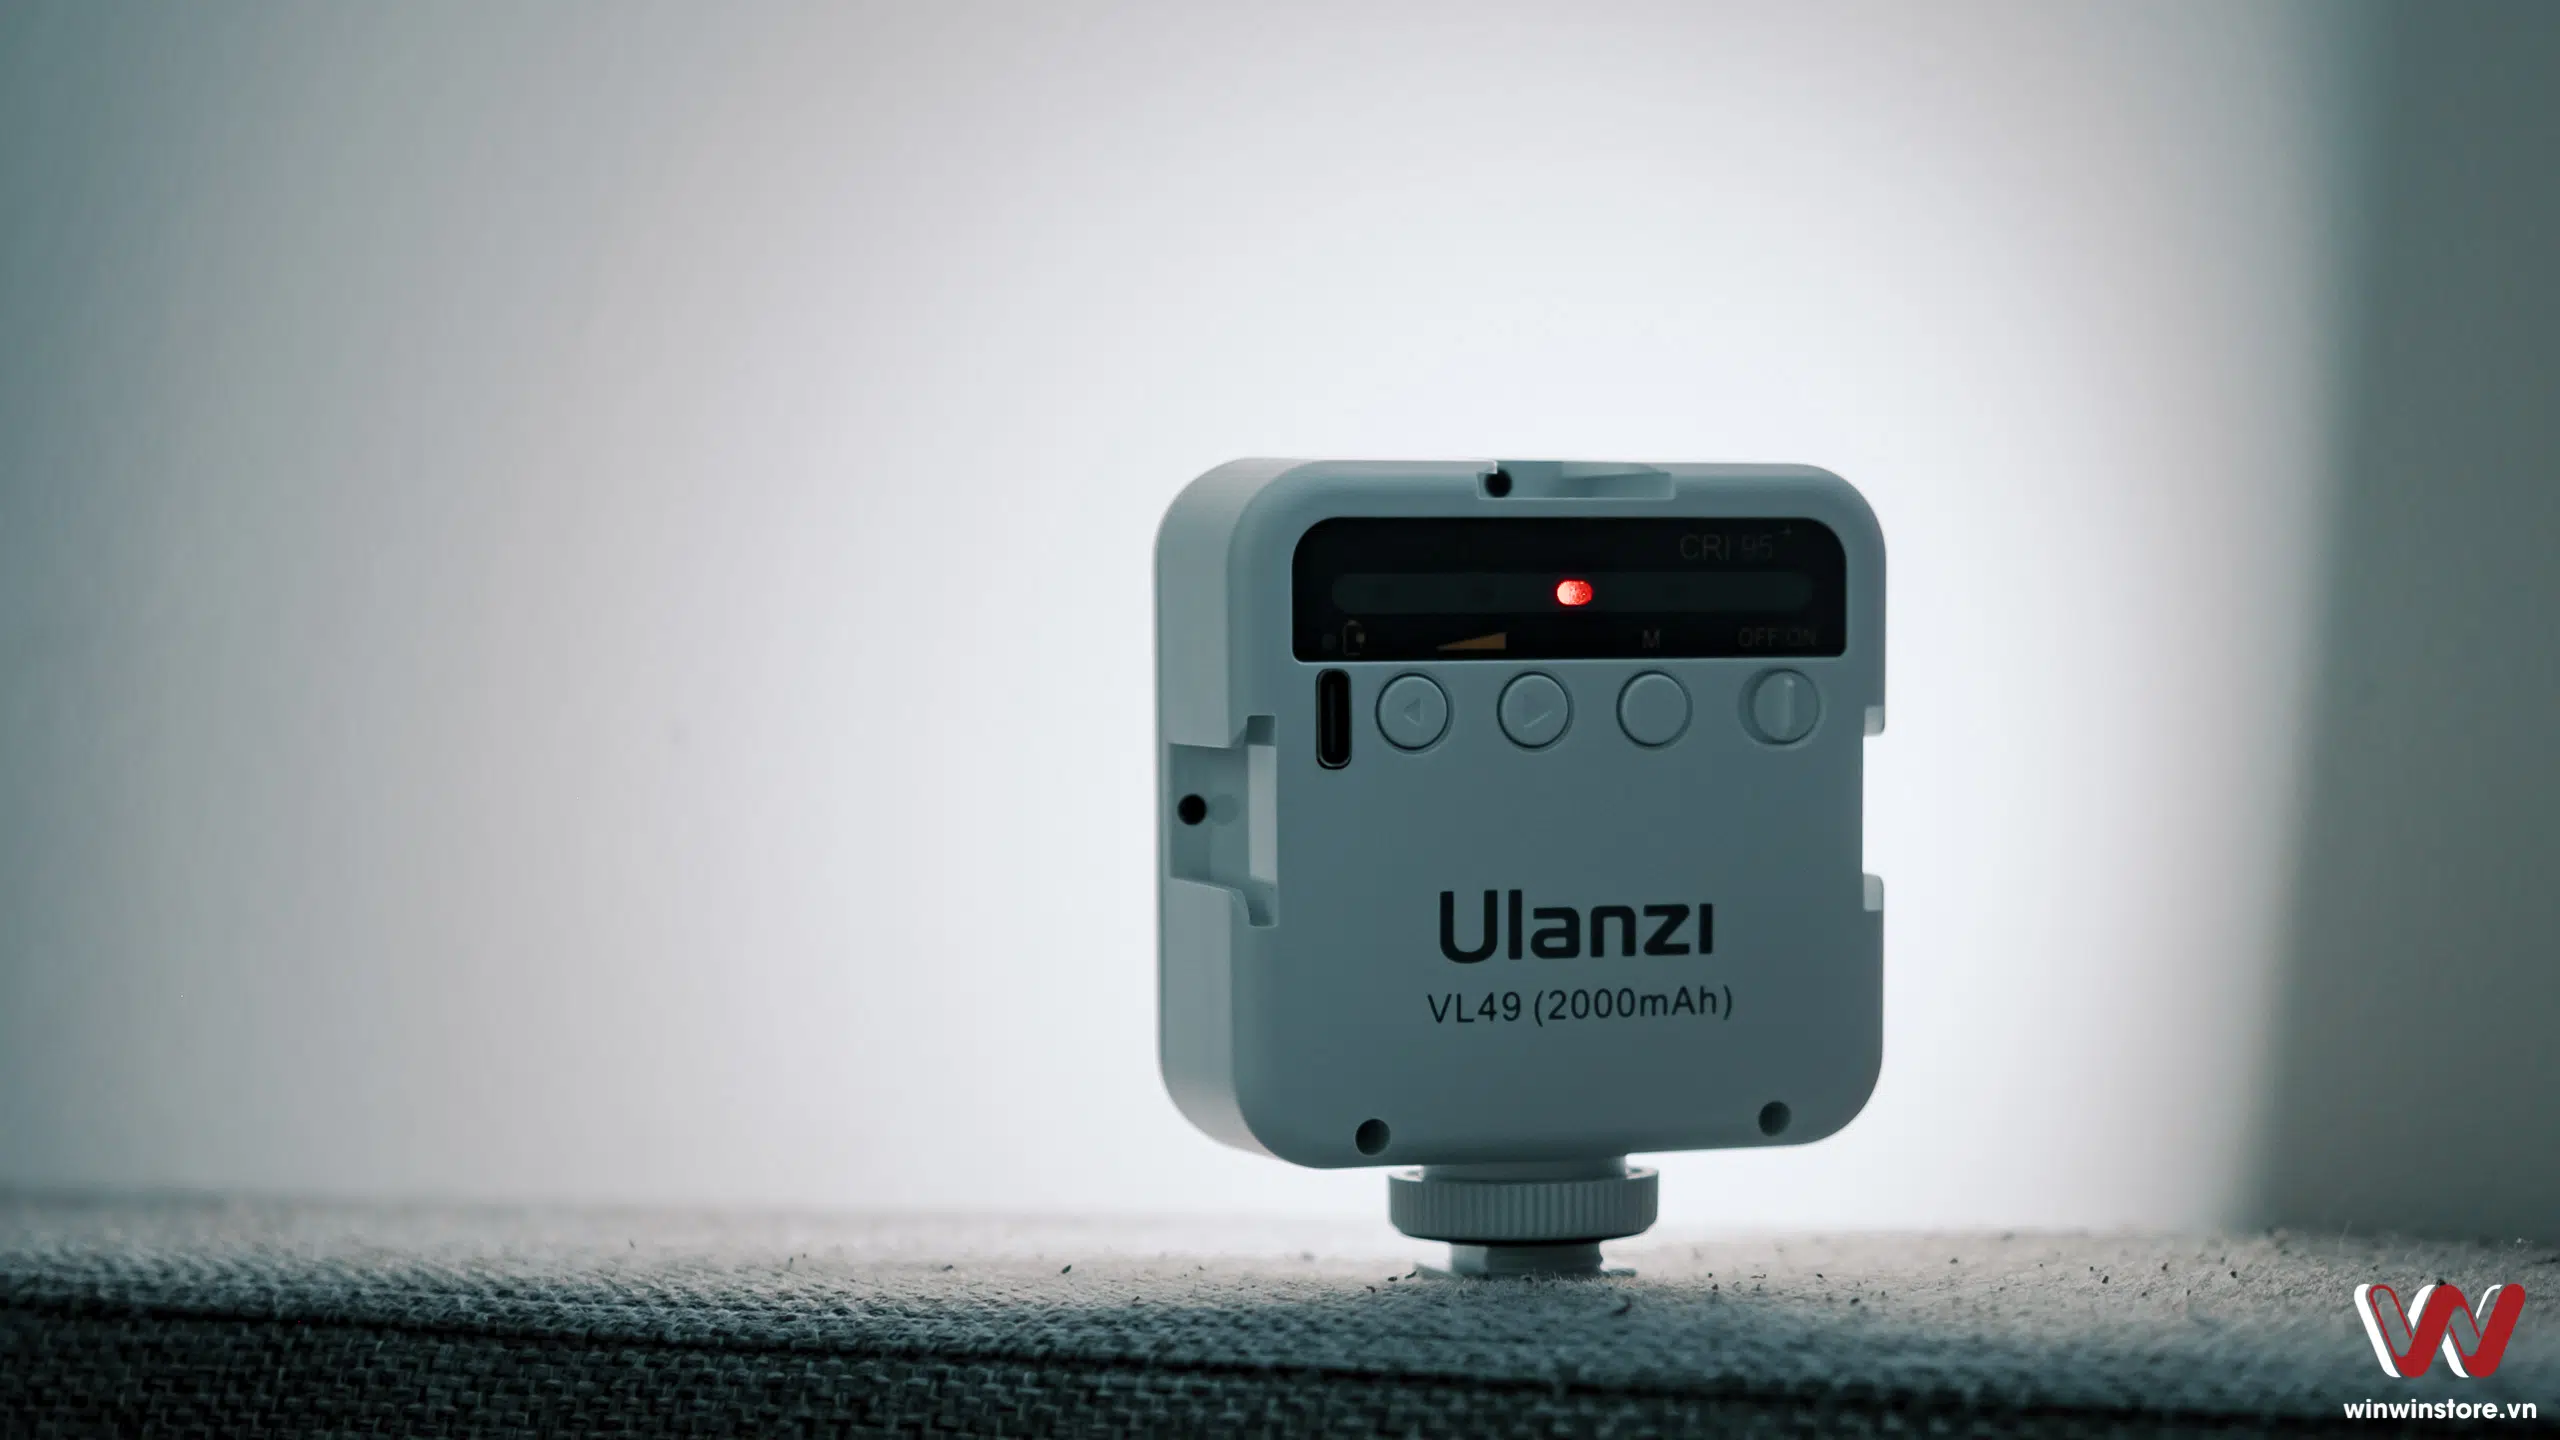 Bộ đèn LED trợ sáng Ulanzi kèm chân máy và đế kẹp cho smartphone